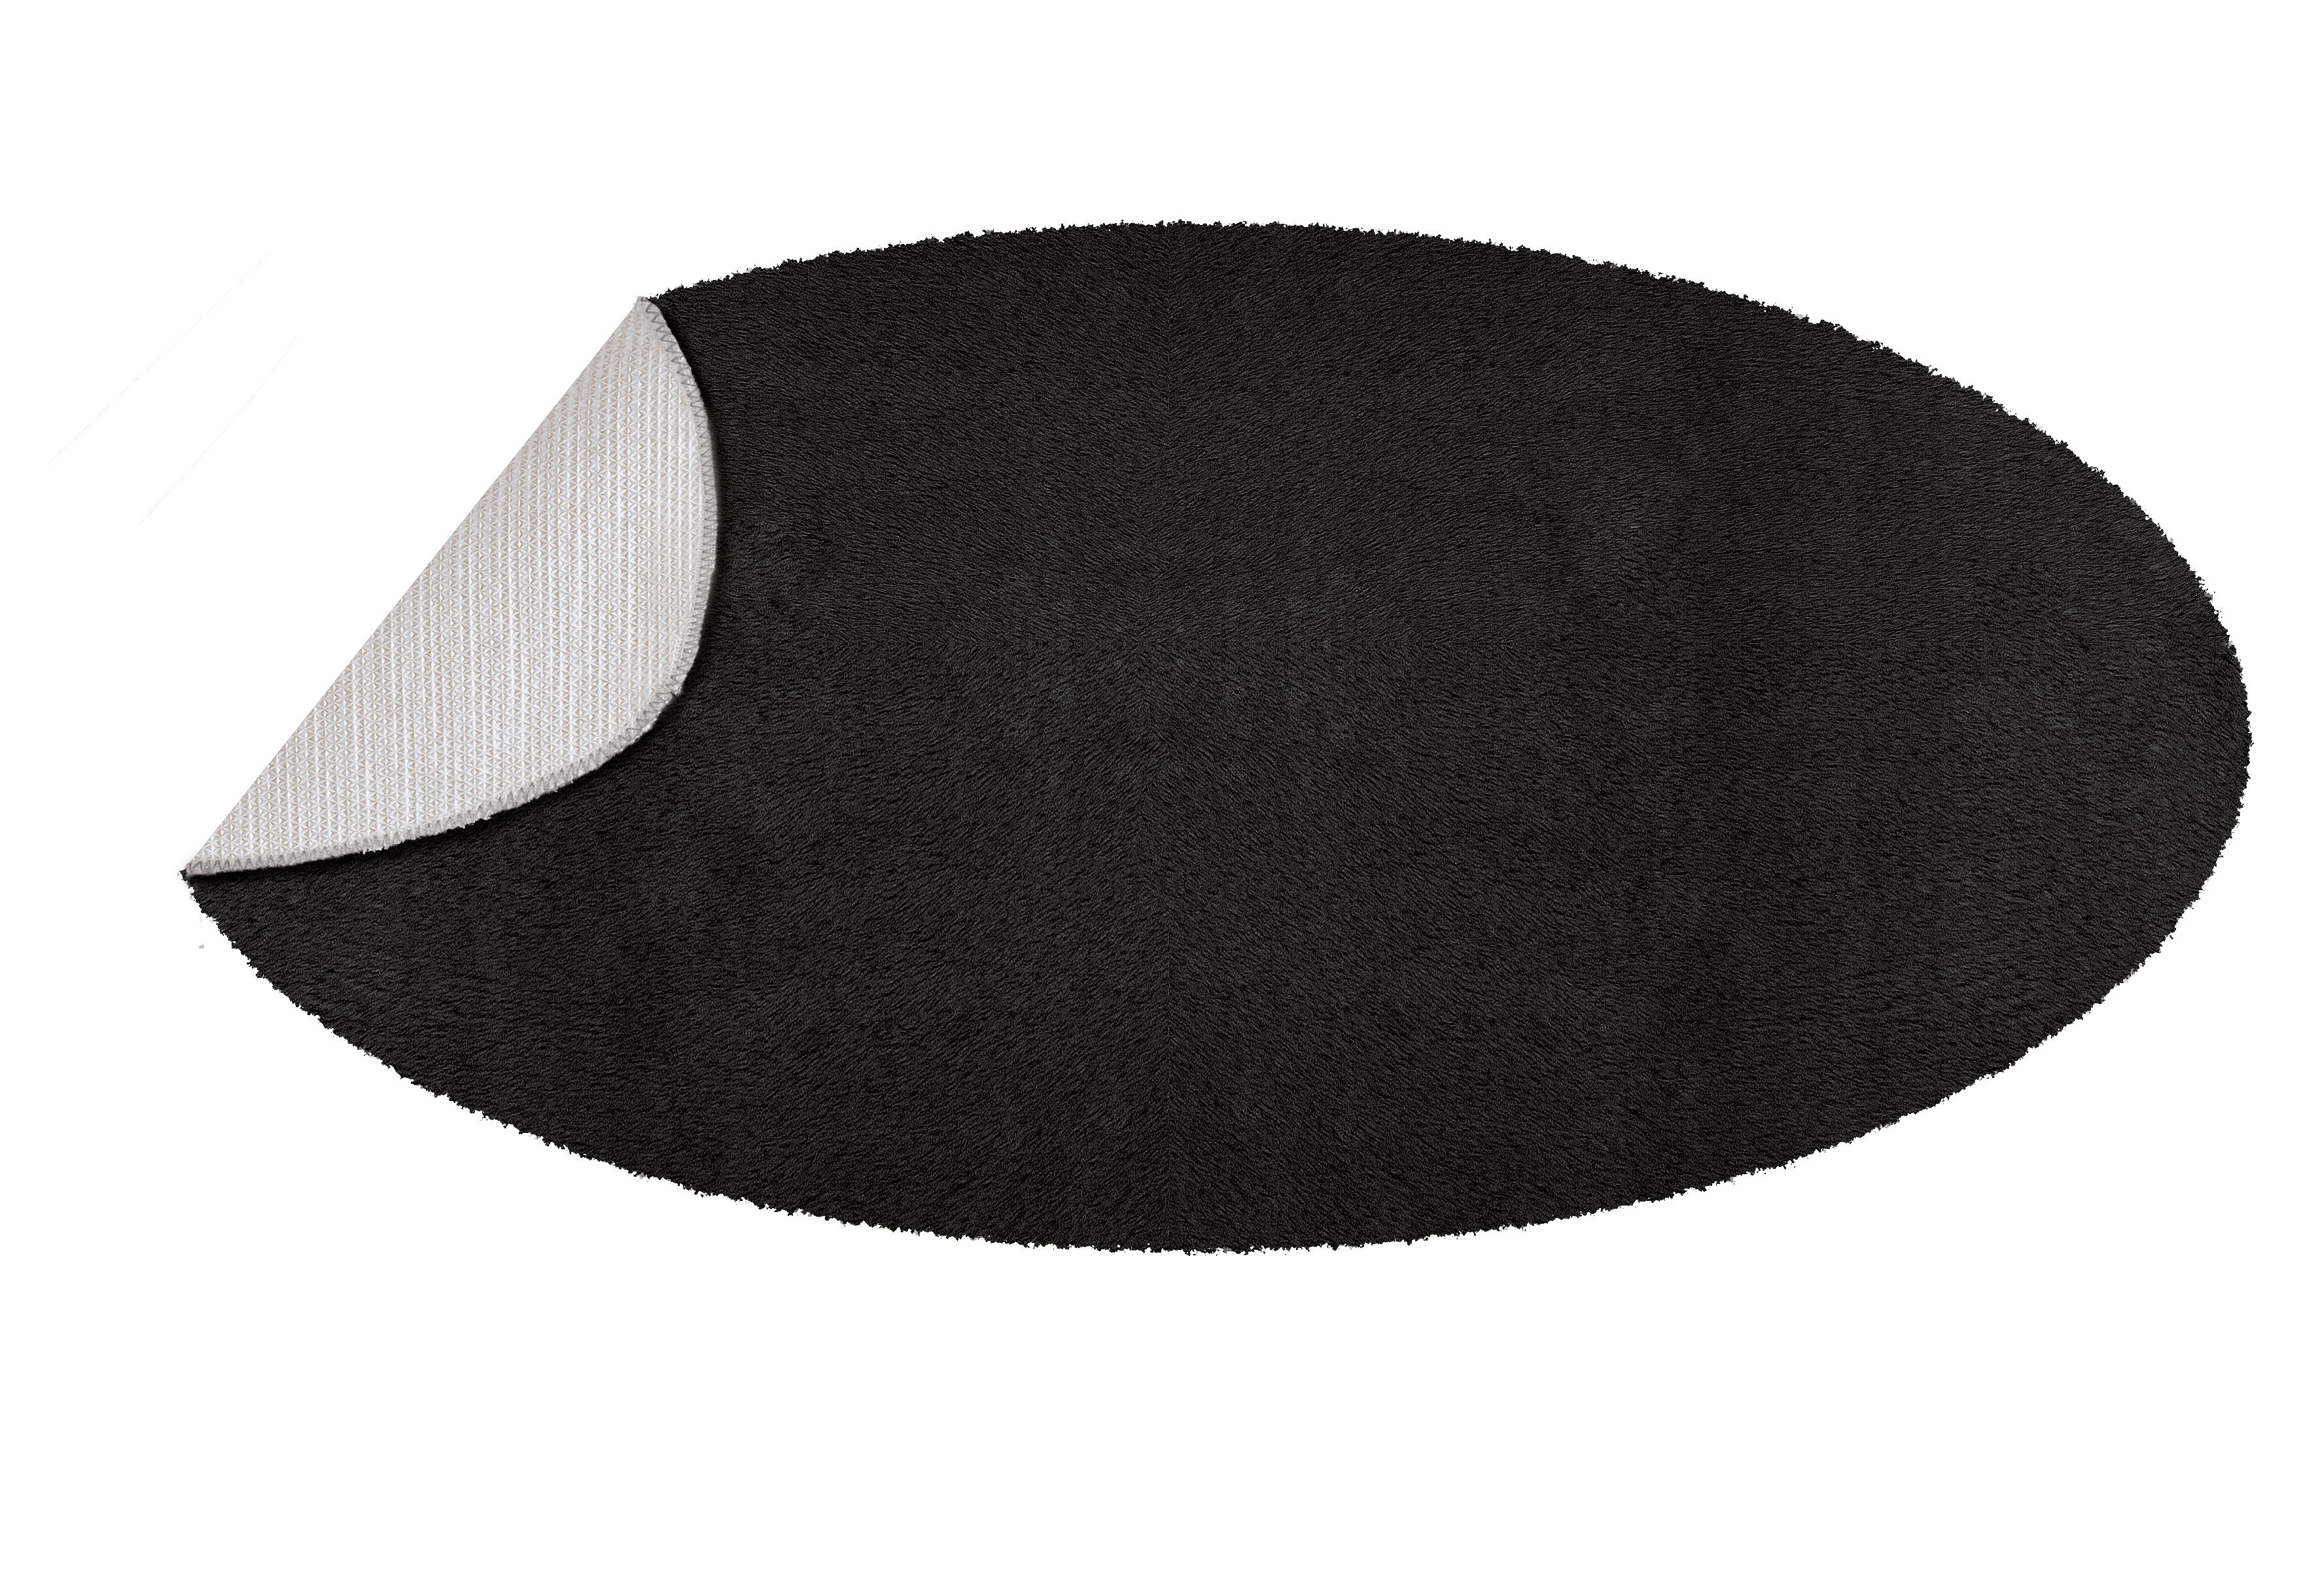 Badteppich Cony Oval, Schwarz, 60x110 cm